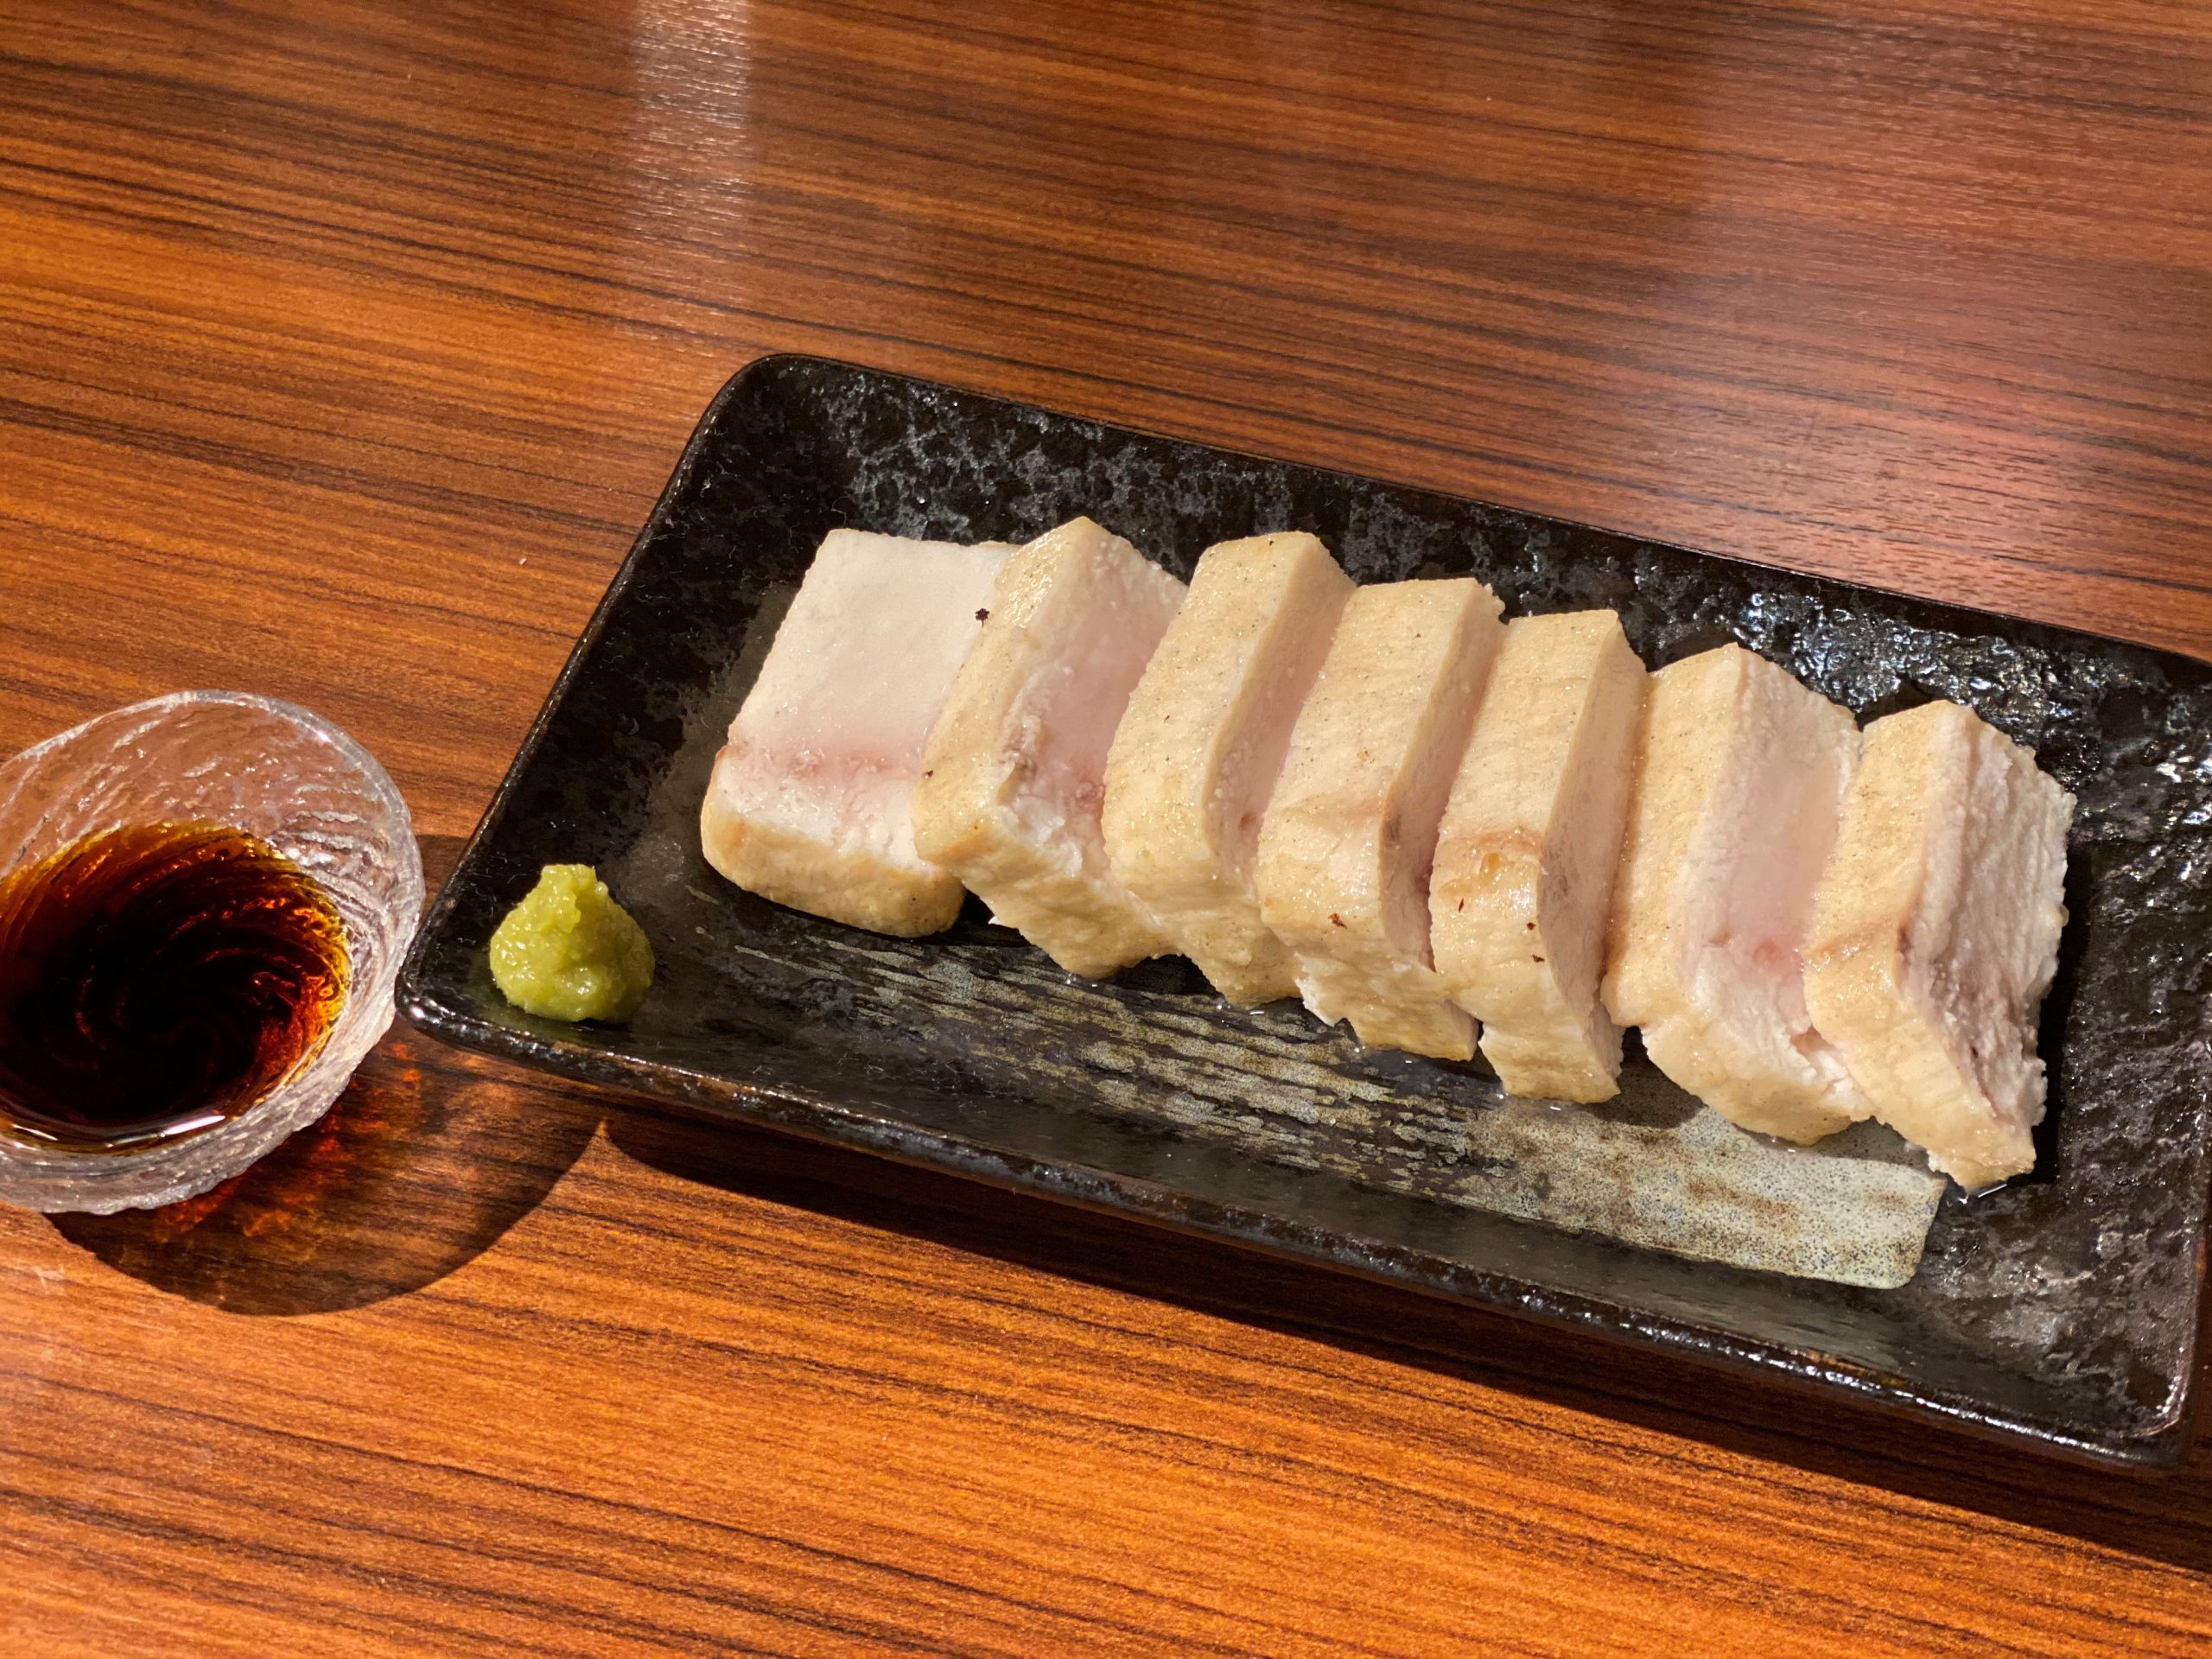 メカジキの揚げステーキ 海の恵み 食の底力 Japan 公式レシピサイト